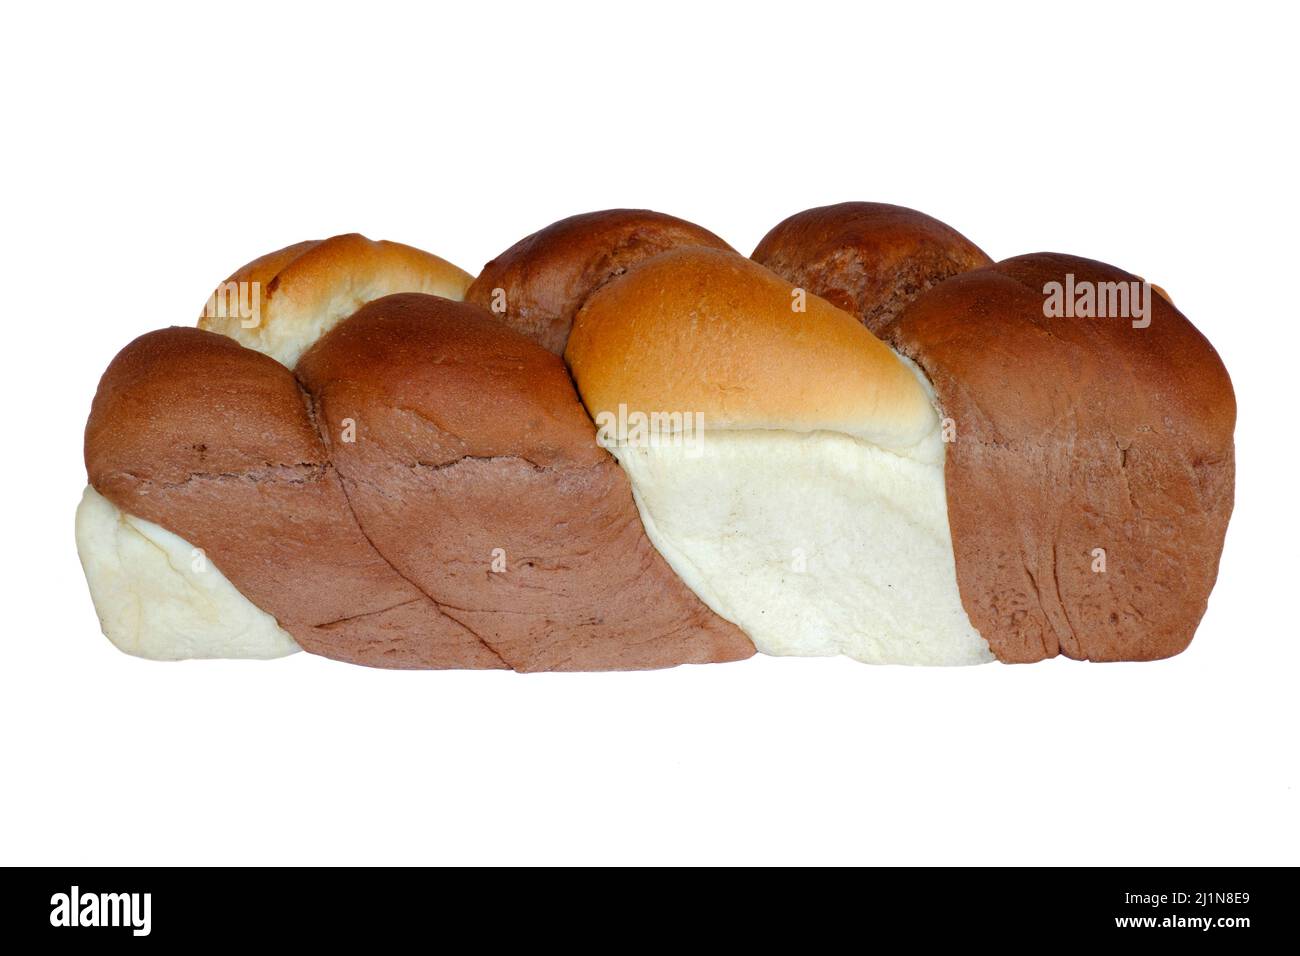 tradicional fonott húngaro kalács dulce pan trenzado torcido popular especialmente en la época de pascua en hungría Foto de stock